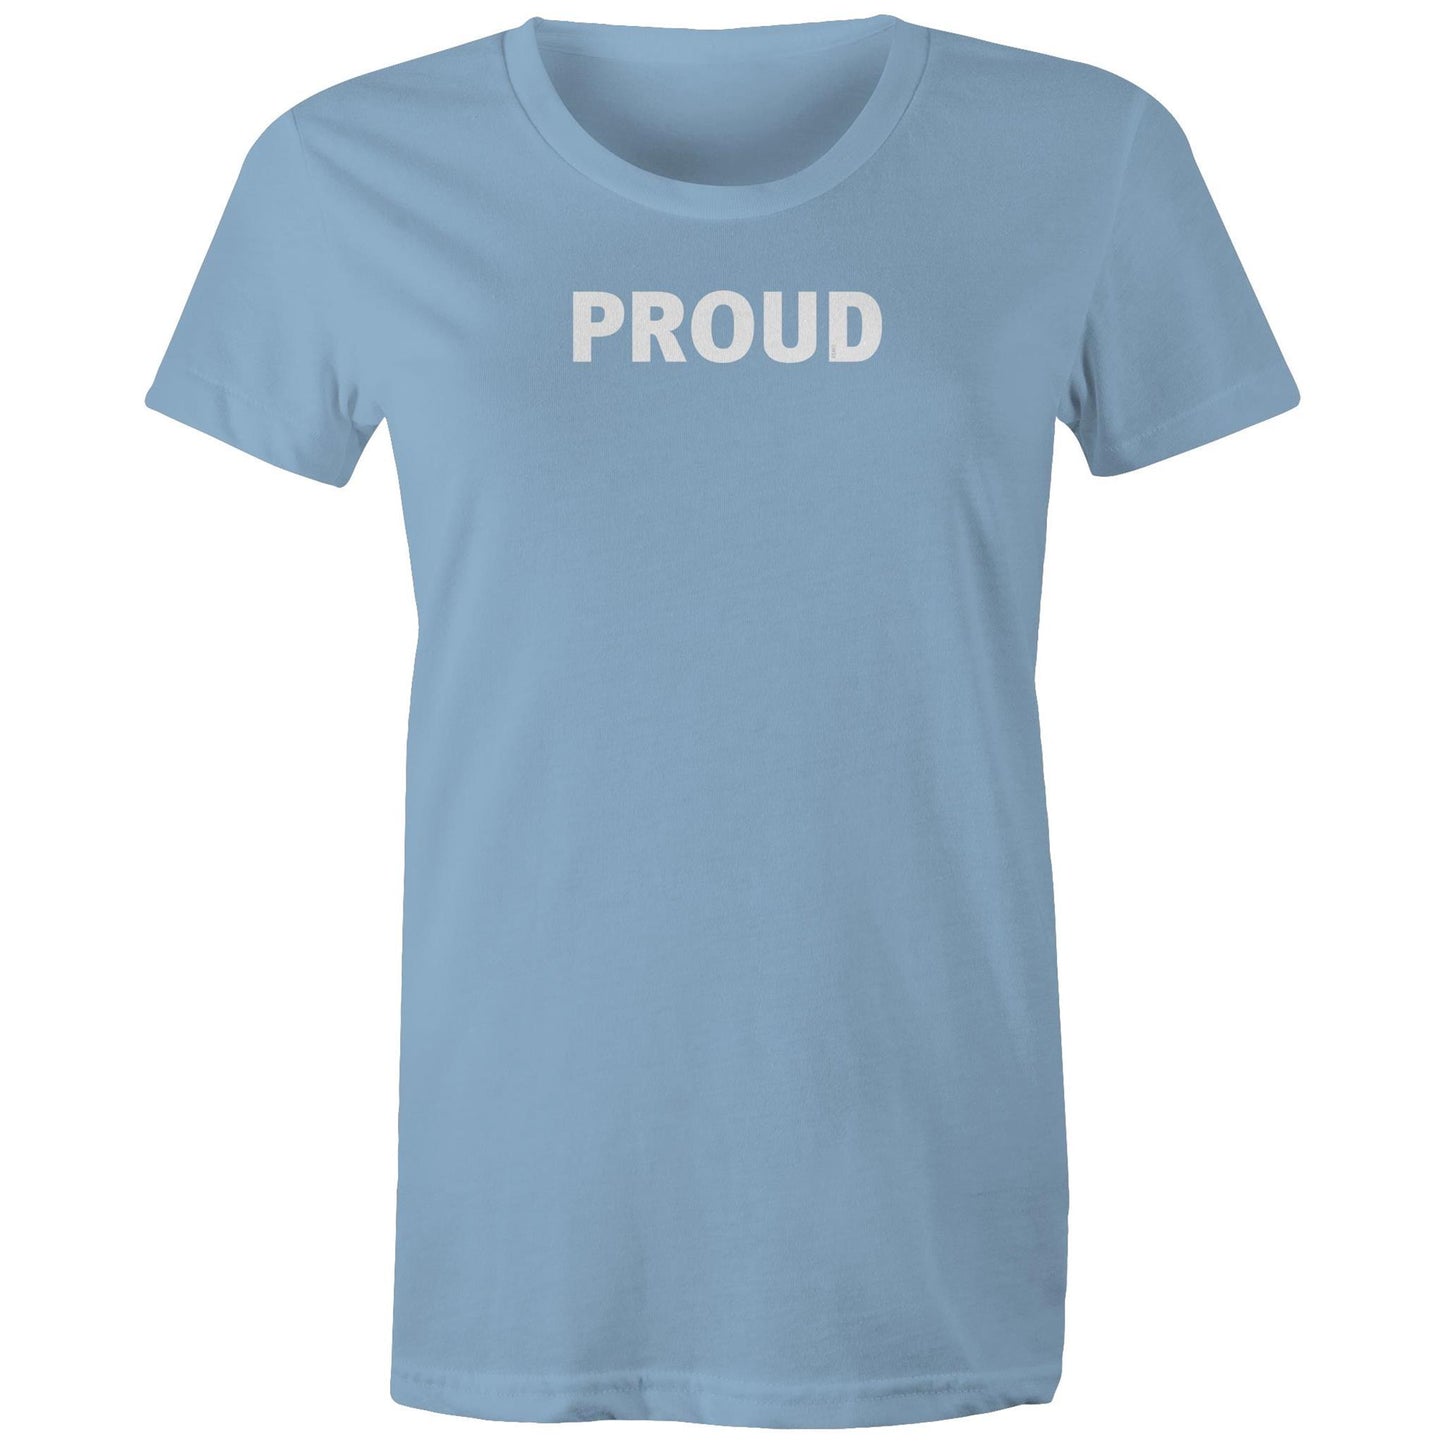 Proud T Shirts for Women